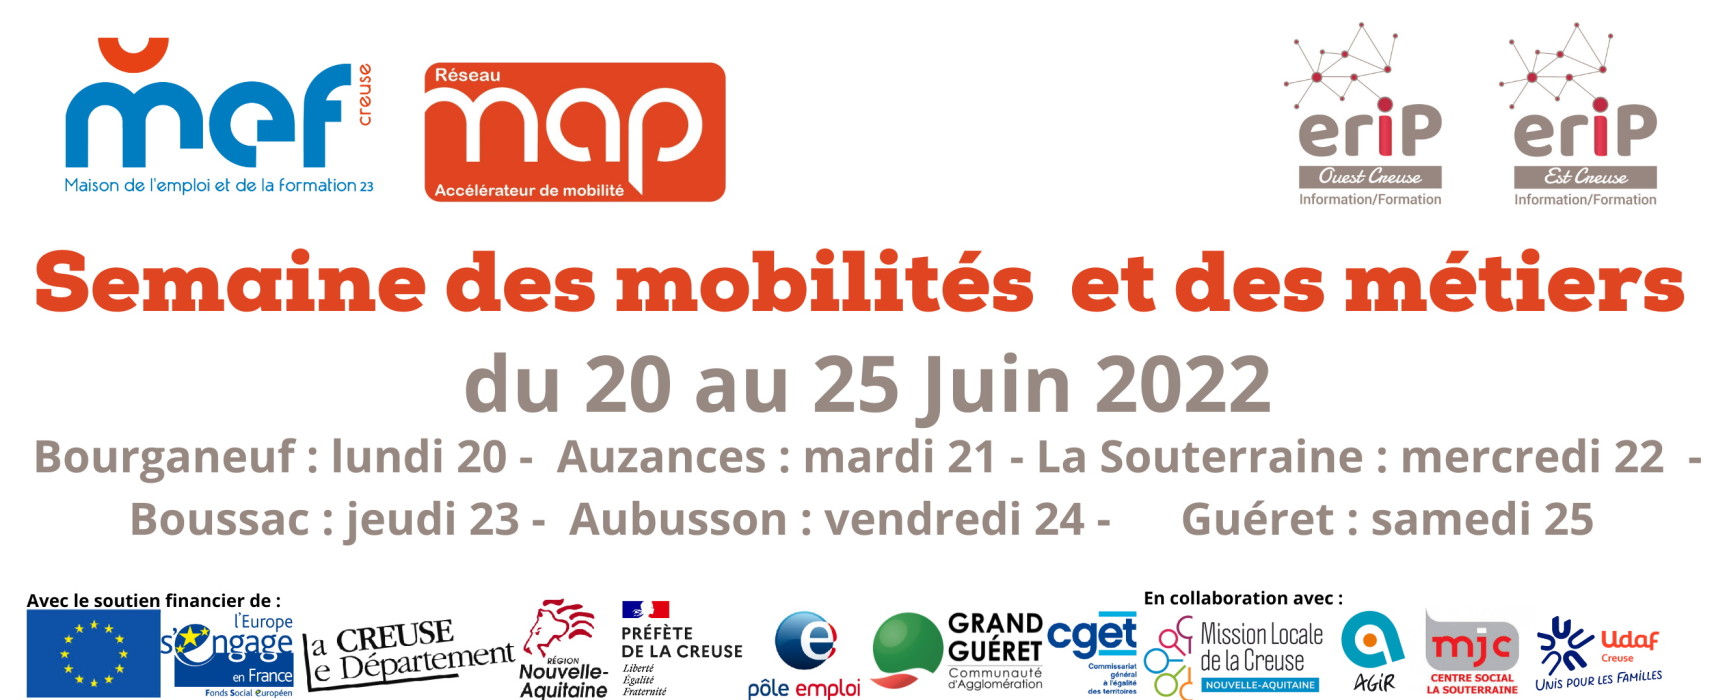 ERIPCreuse, la semaine des mobilités et des métiers revient du 20 au 25 juin 2022 en Creuse